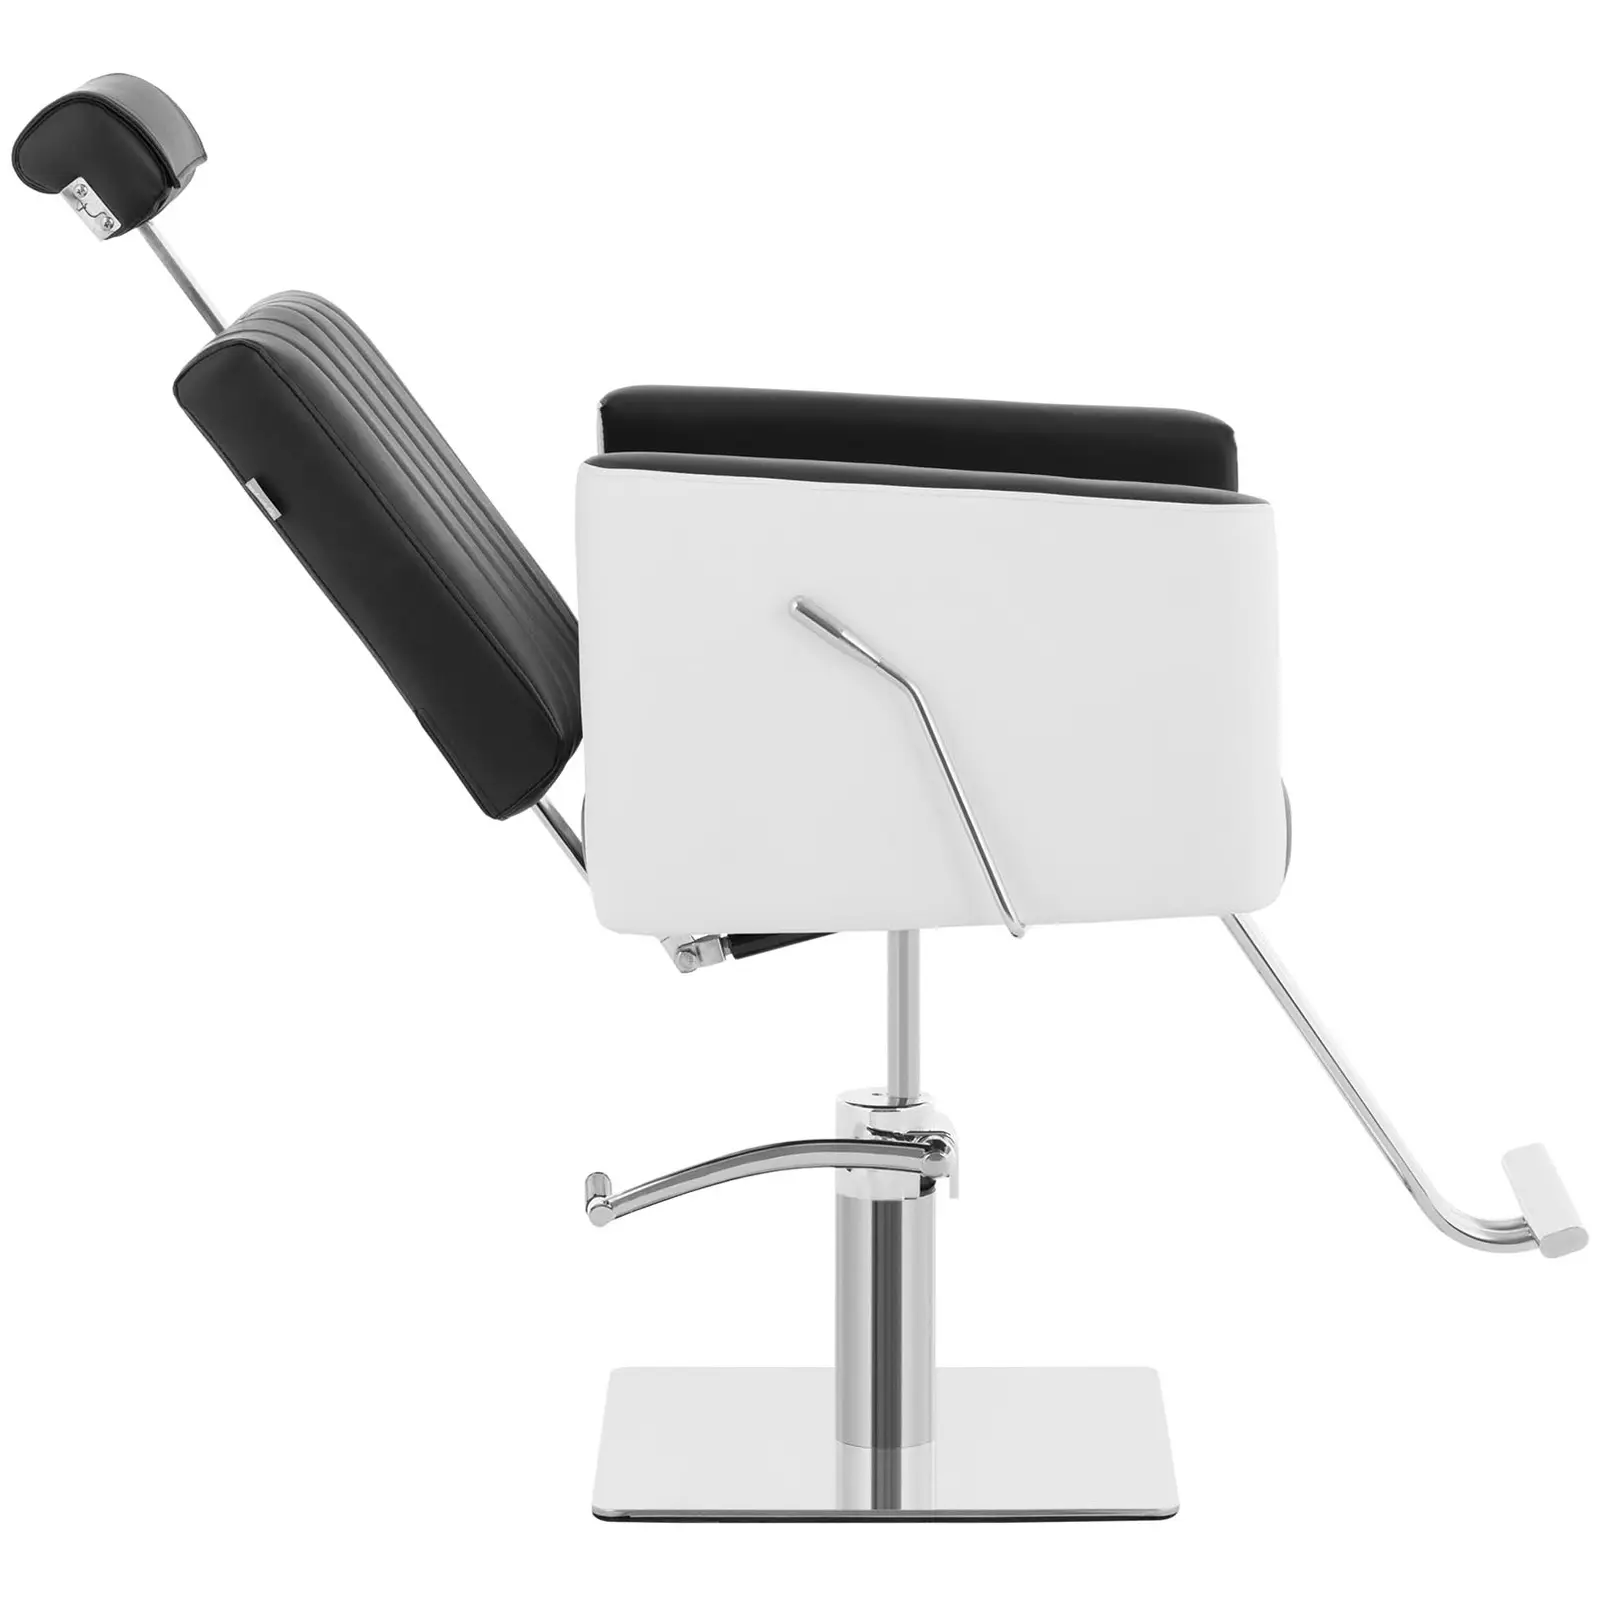 Frisørstol med fodstøtte - 470 x 630 mm - 150 kg - sort, hvid